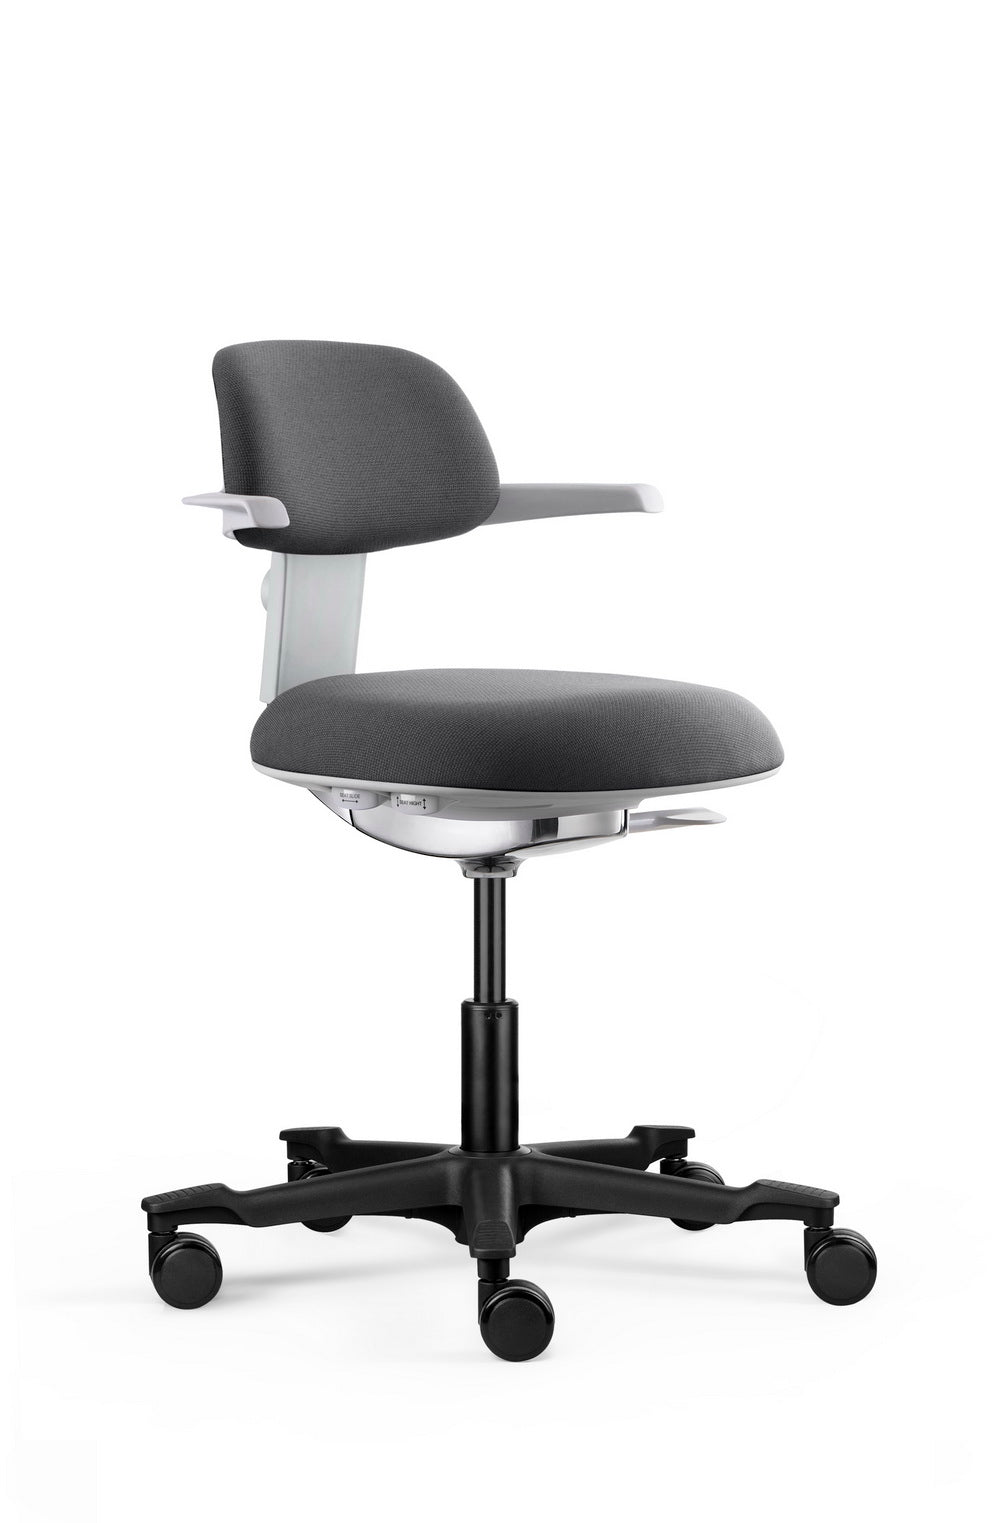 人體工學椅 布背布座 減壓 可升降 腰部支撐 吧椅 BAR Chair